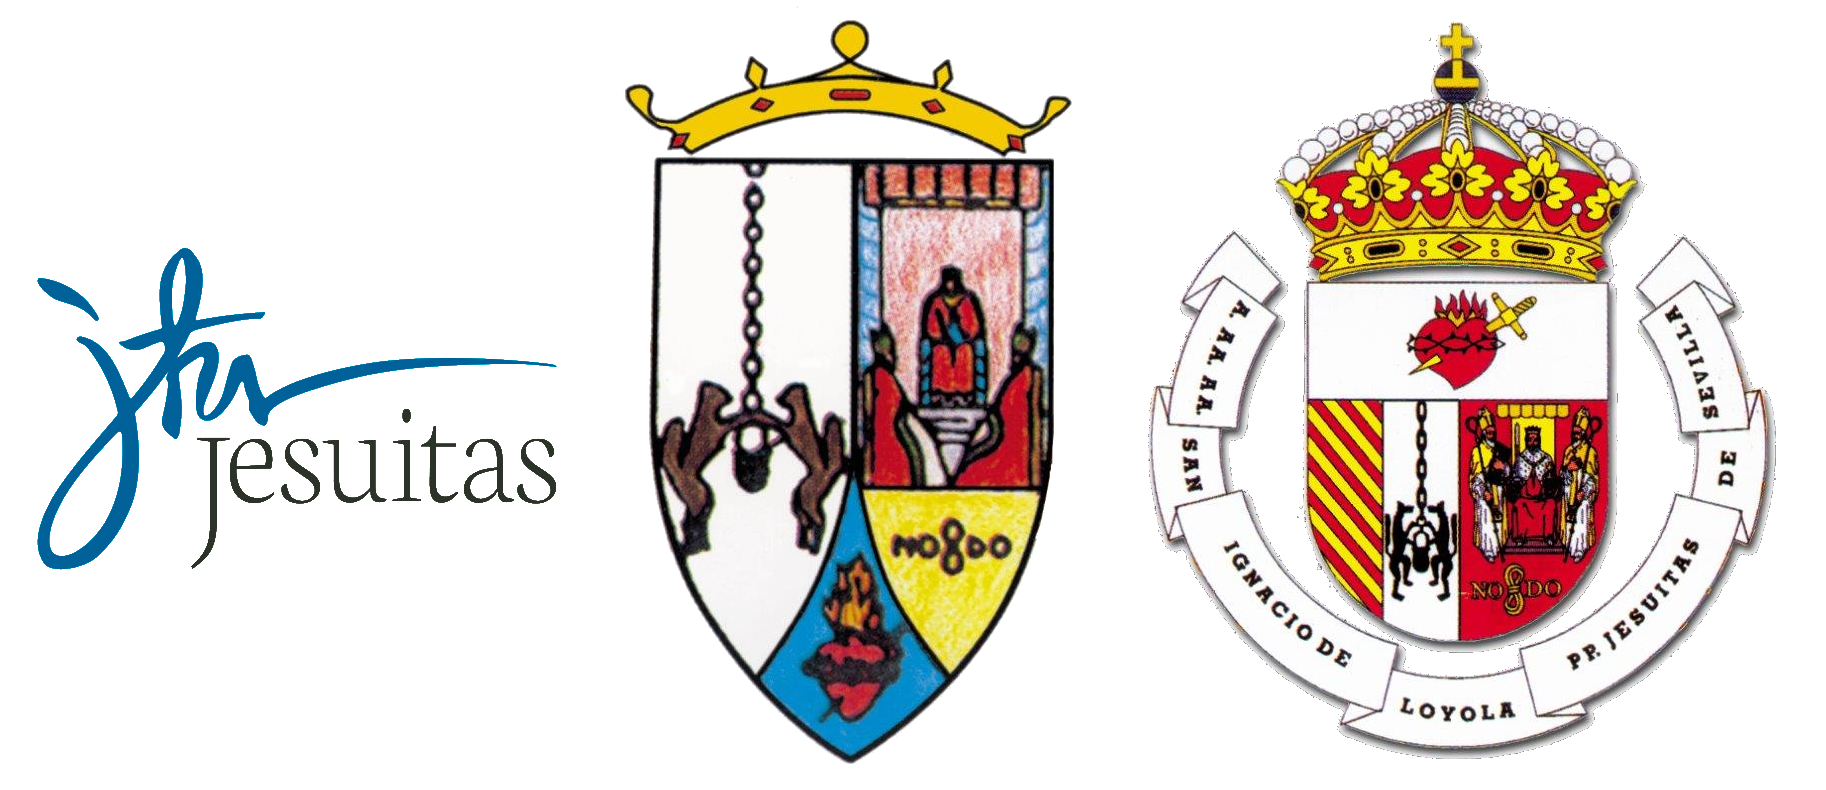 Antiguos Alumnos Portaceli Logo